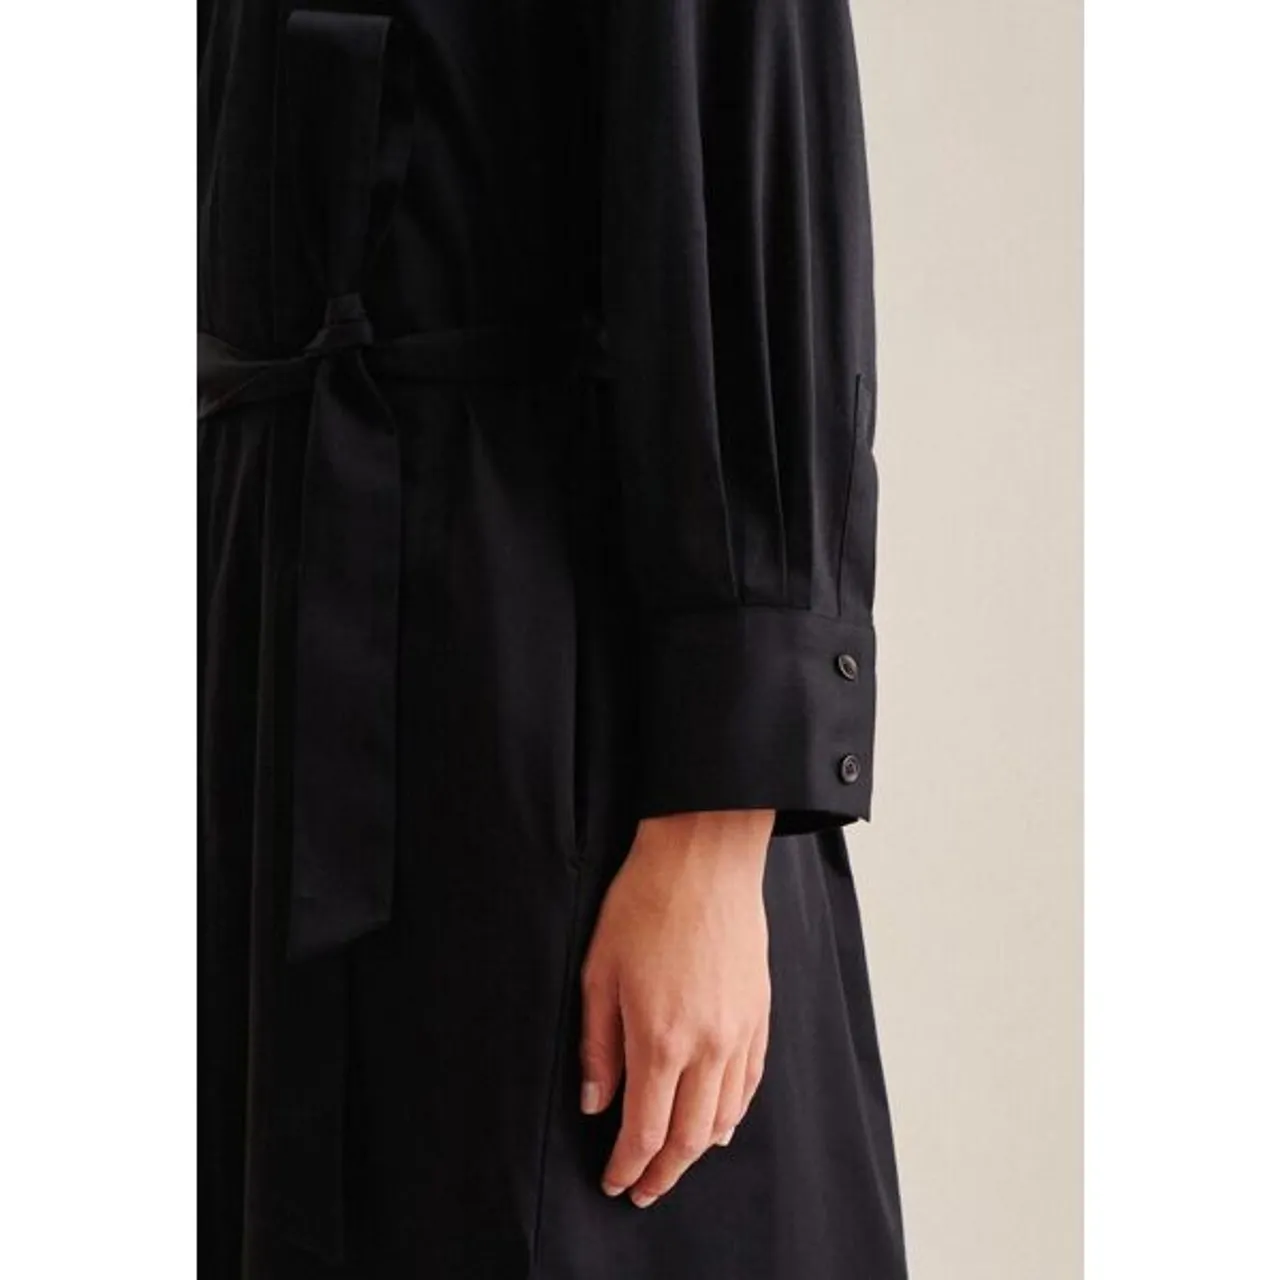 Sommerkleid SEIDENSTICKER "Schwarze Rose" Gr. 38, Normalgrößen, schwarz Damen Kleider Sommerkleider 78-Arm V-Neck Uni